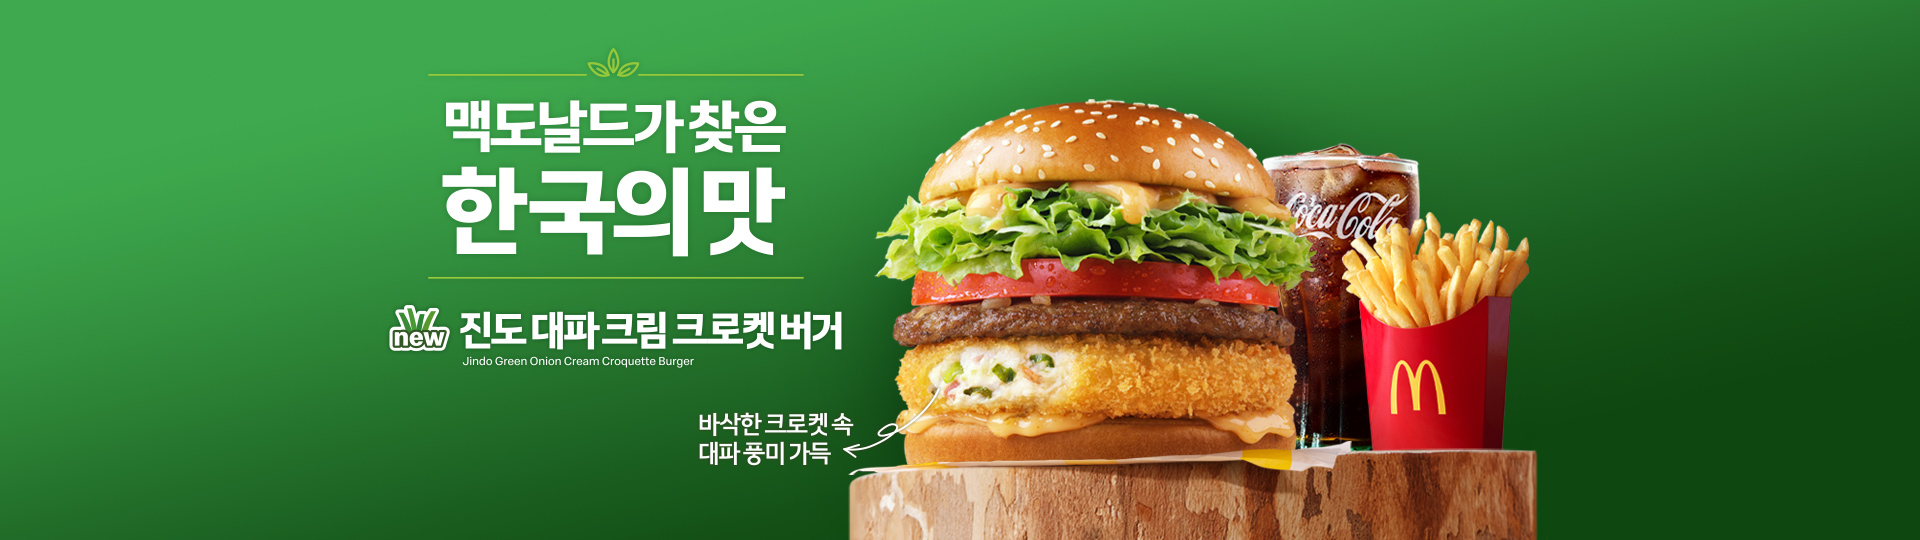 맥도날드가 찾은 한국의 맛 진도 대파 크림 크로켓 버거 바삭한 크로켓 속 대파 풍미 가득_버거세트제품 콜라M 후렌치후라이 포함